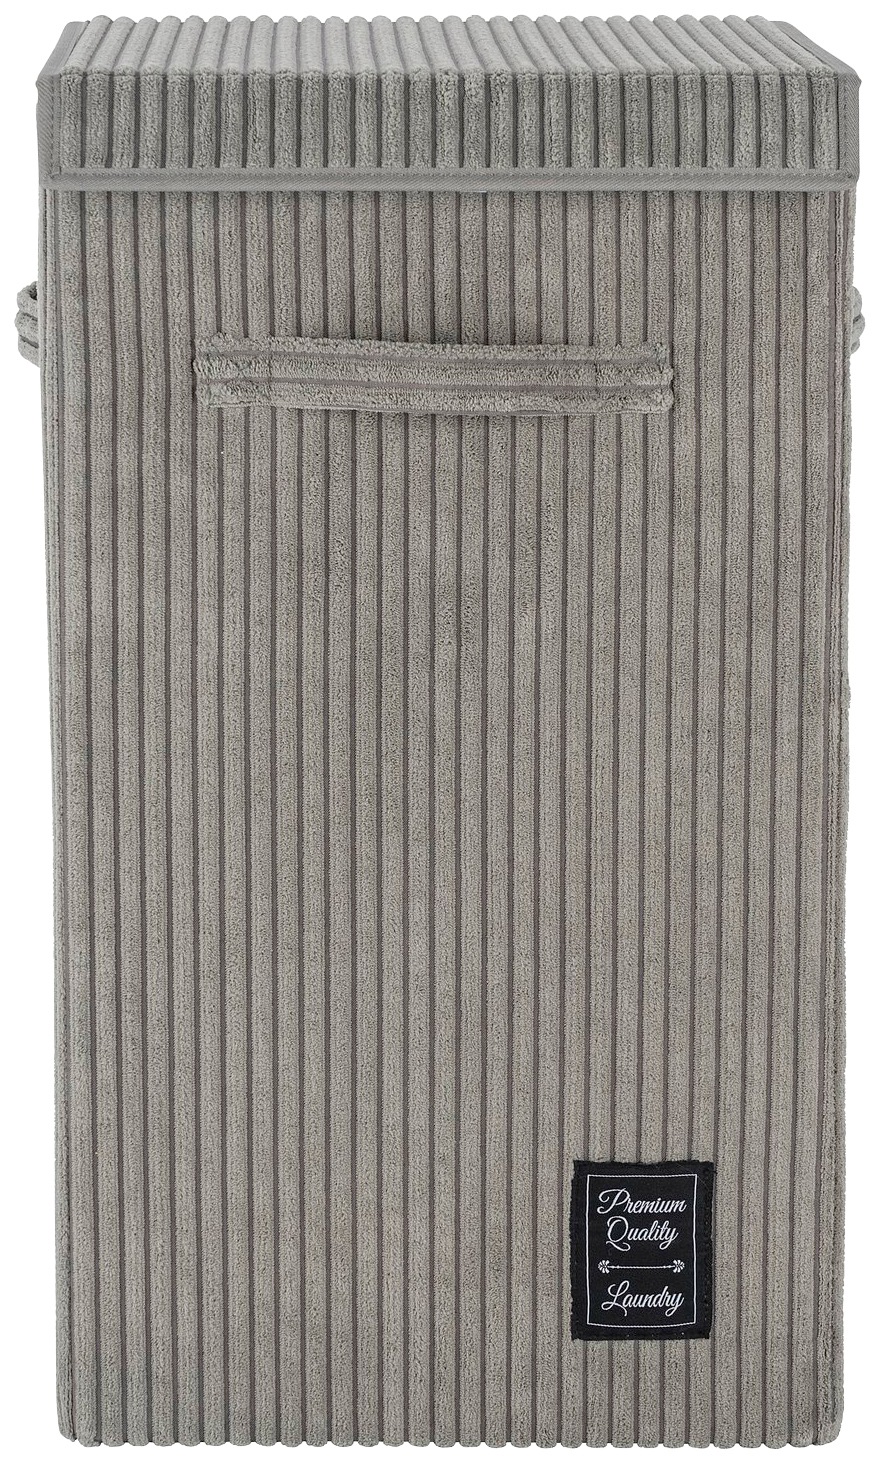 WENKO Wäschekorb »Cora Grau«, mit klappdeckel und Griffen, grau